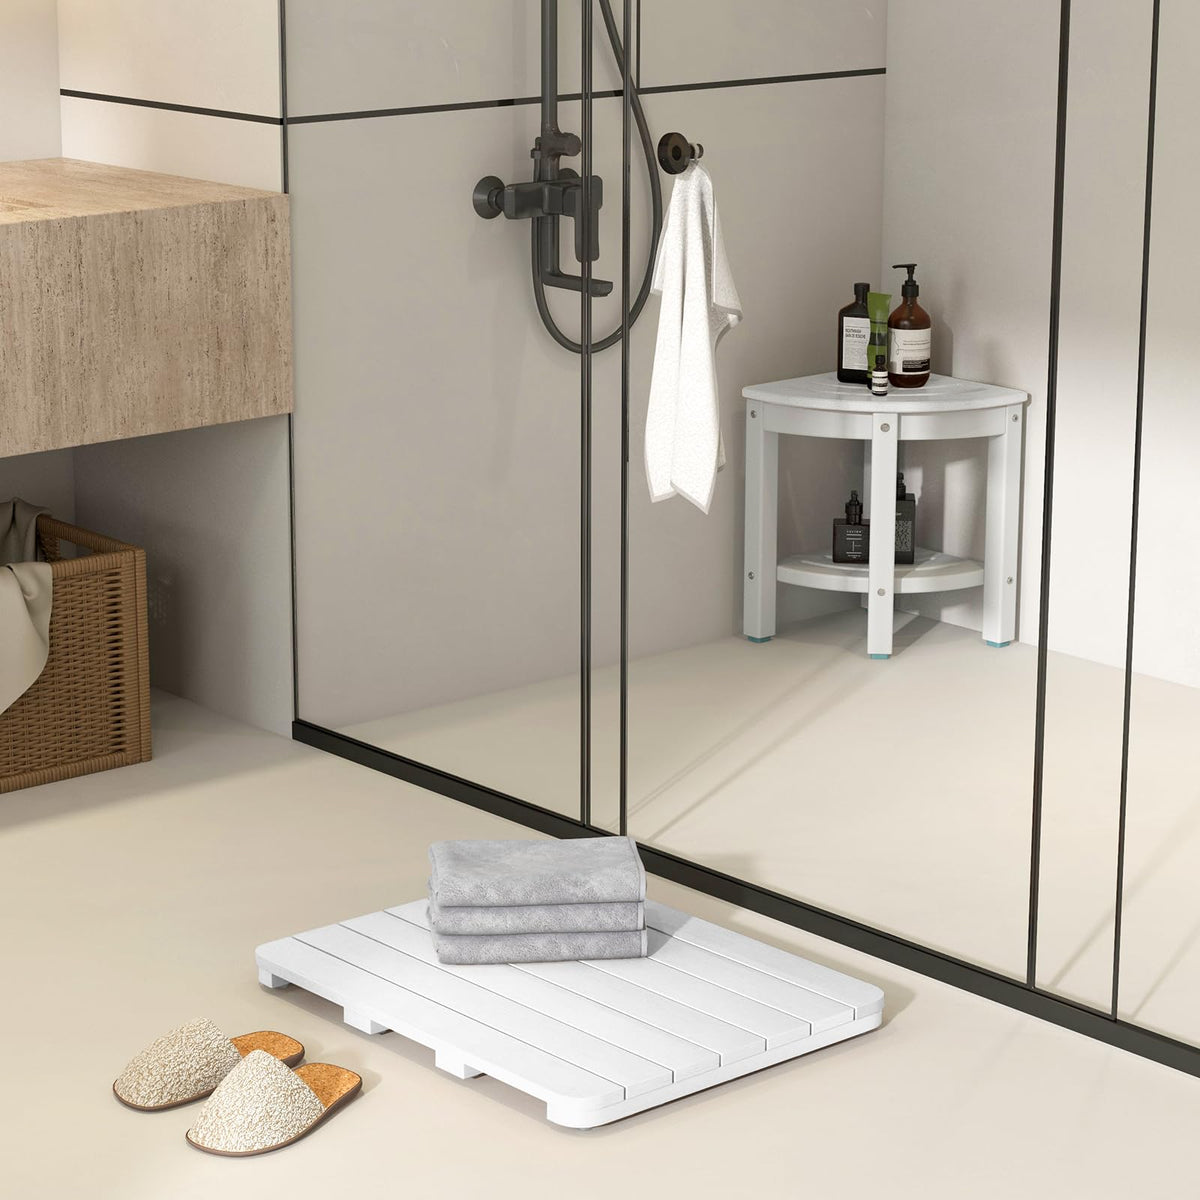 Giantex Non-Slip Bath Mat for Shower